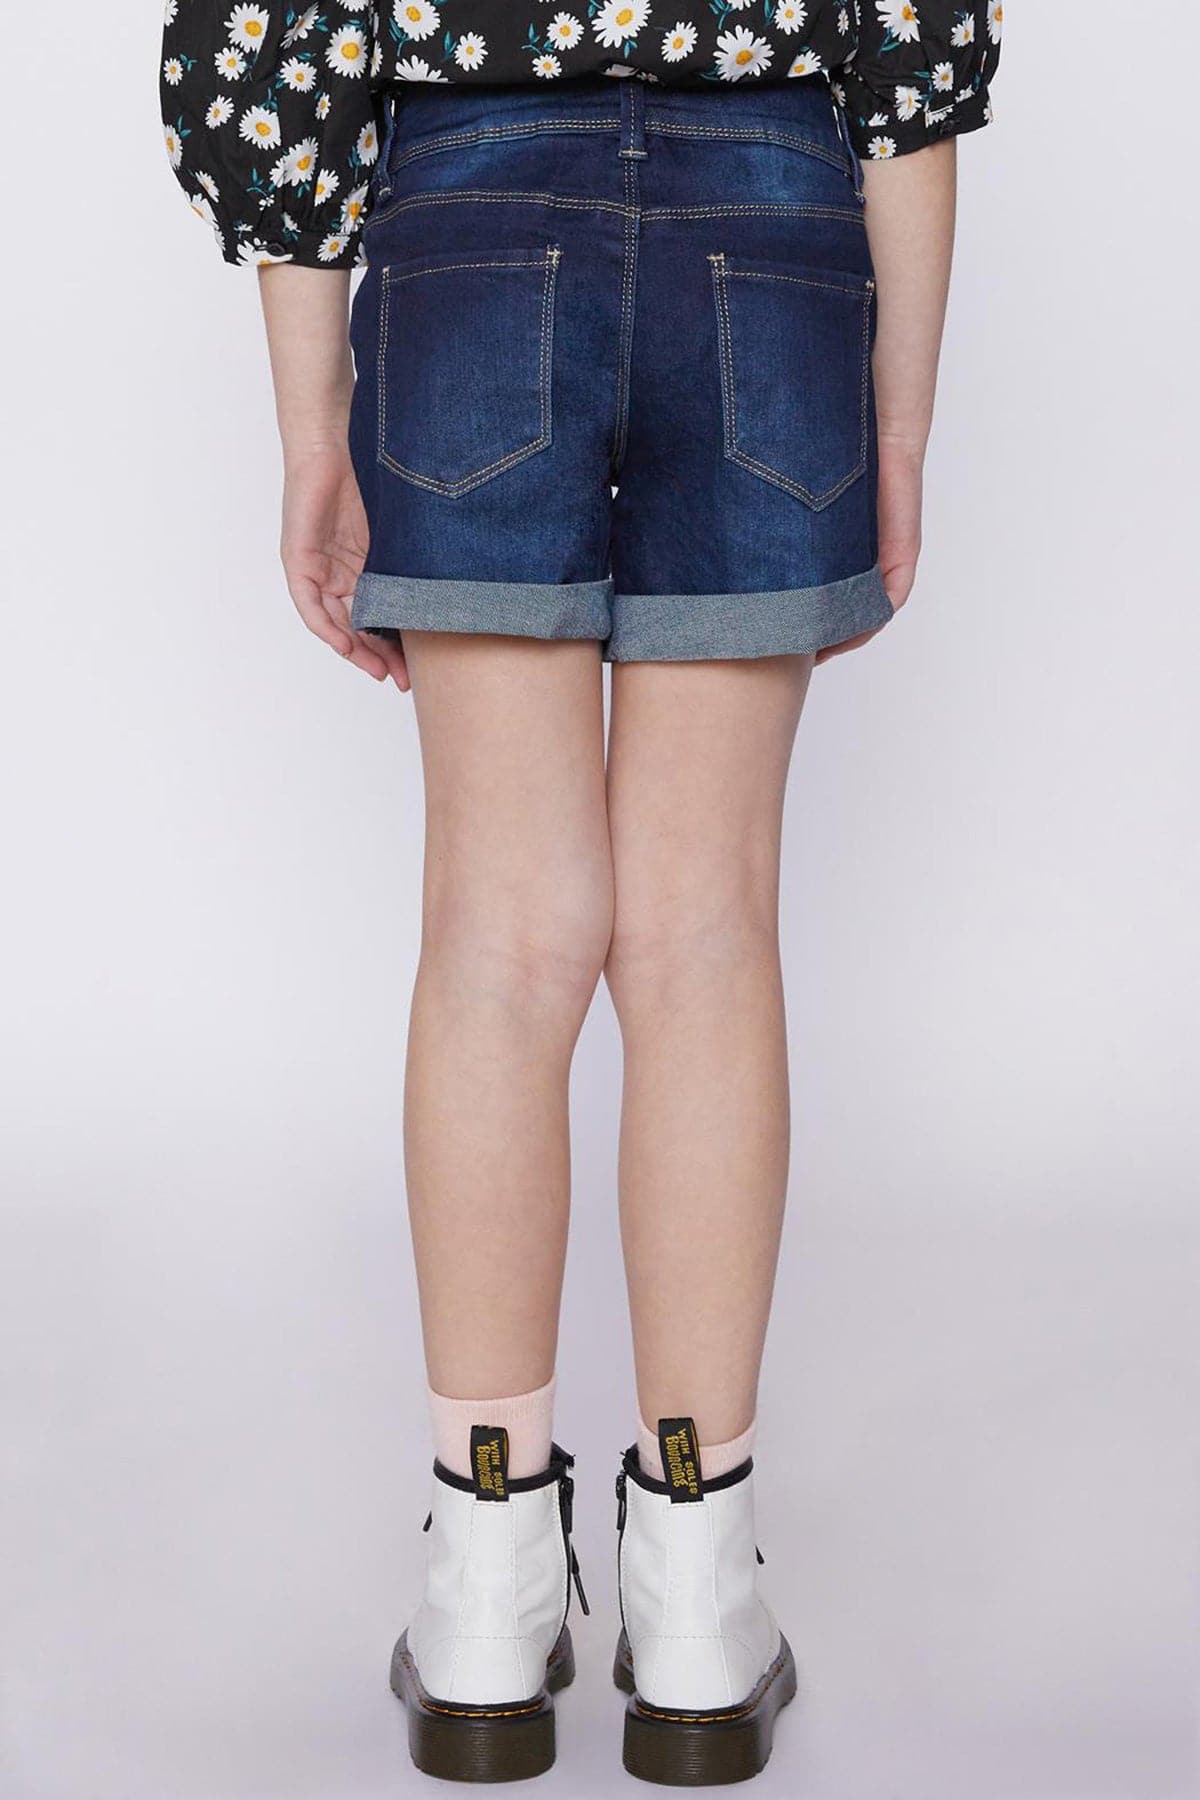 Girls 2 Button Basic Cuffed Shorts Gs61950